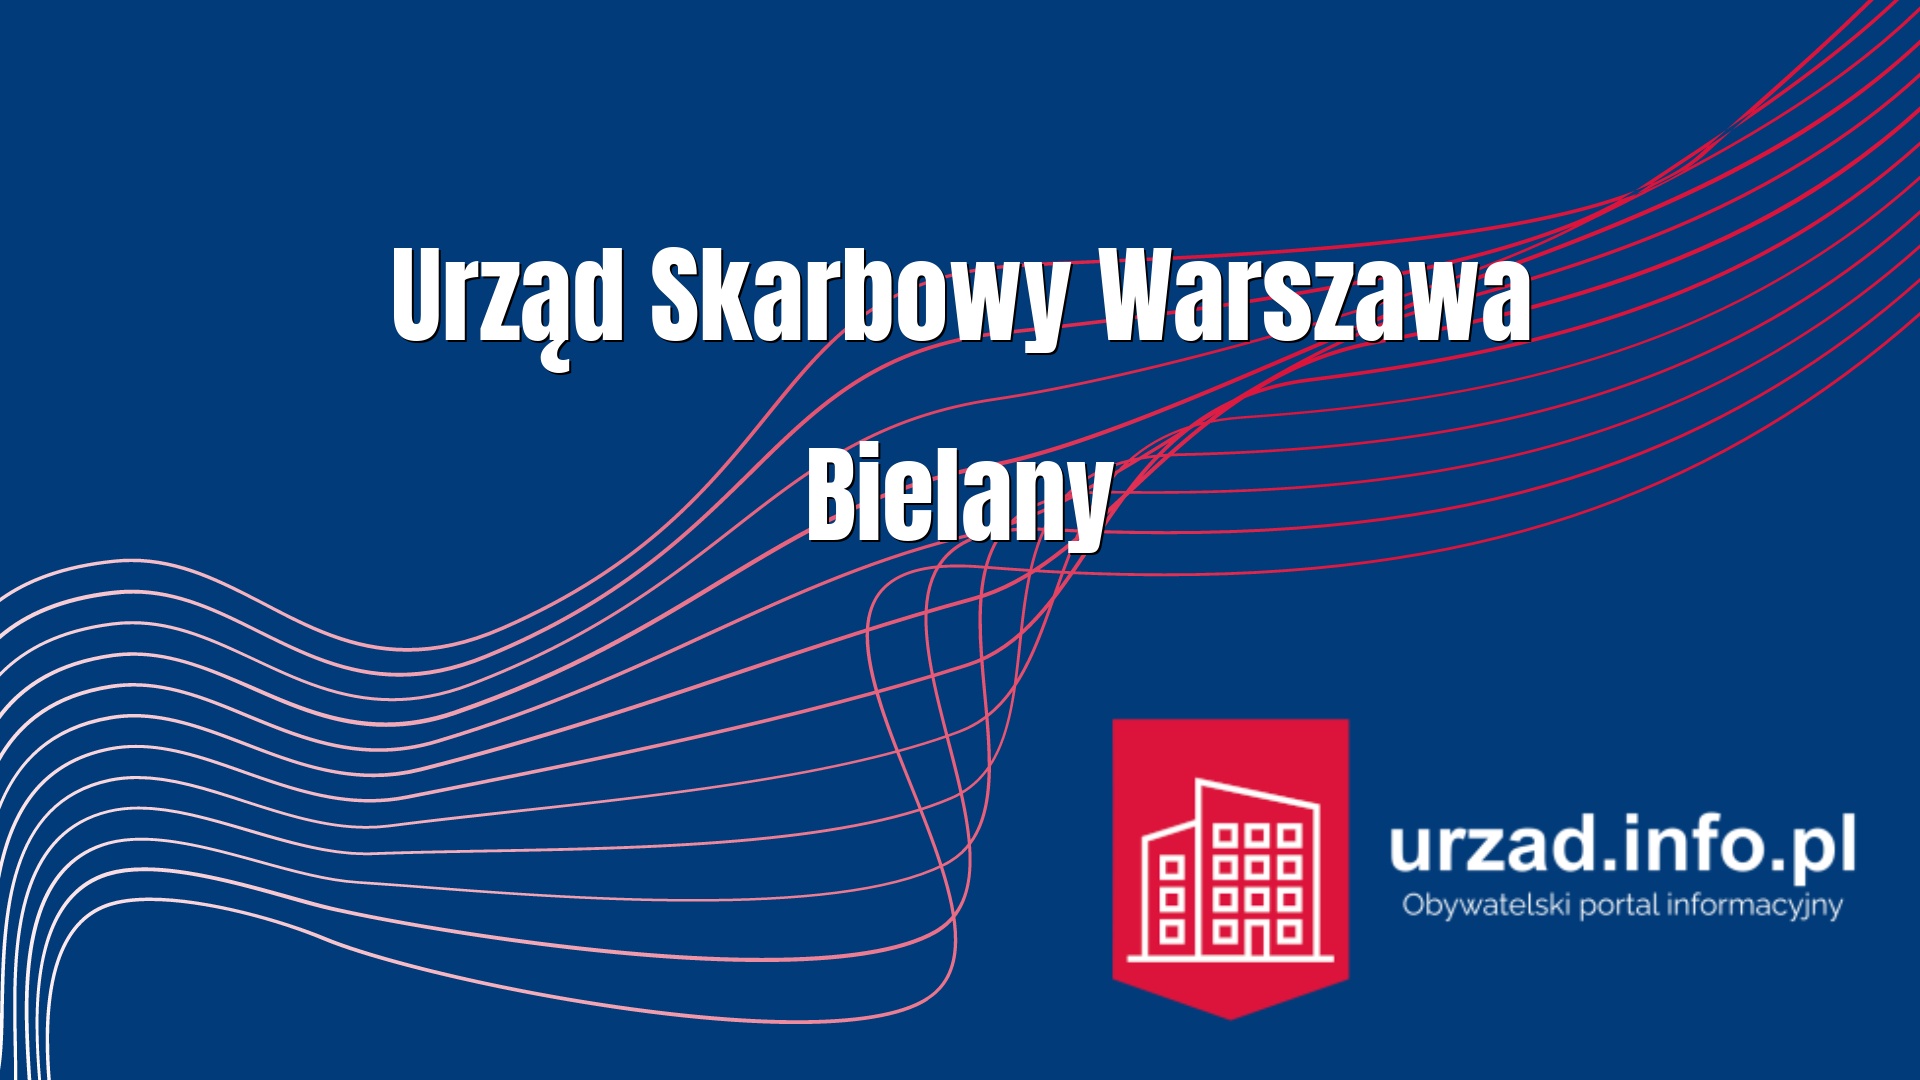 Urząd Skarbowy Warszawa Bielany